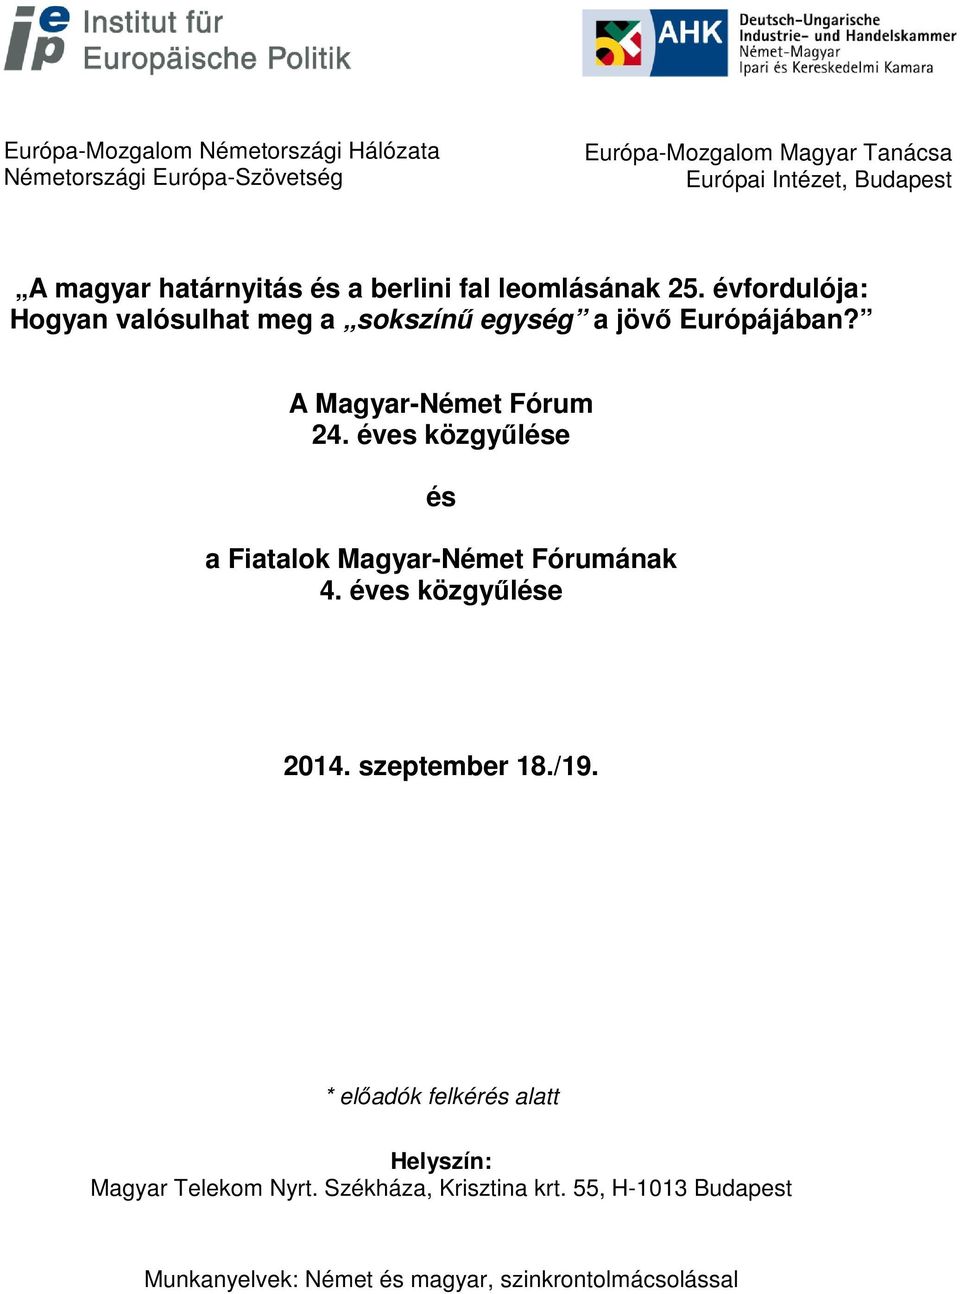 A Magyar-Német Fórum 24. éves közgyűlése és a Fiatalok Magyar-Német Fórumának 4. éves közgyűlése 2014. szeptember 18./19.